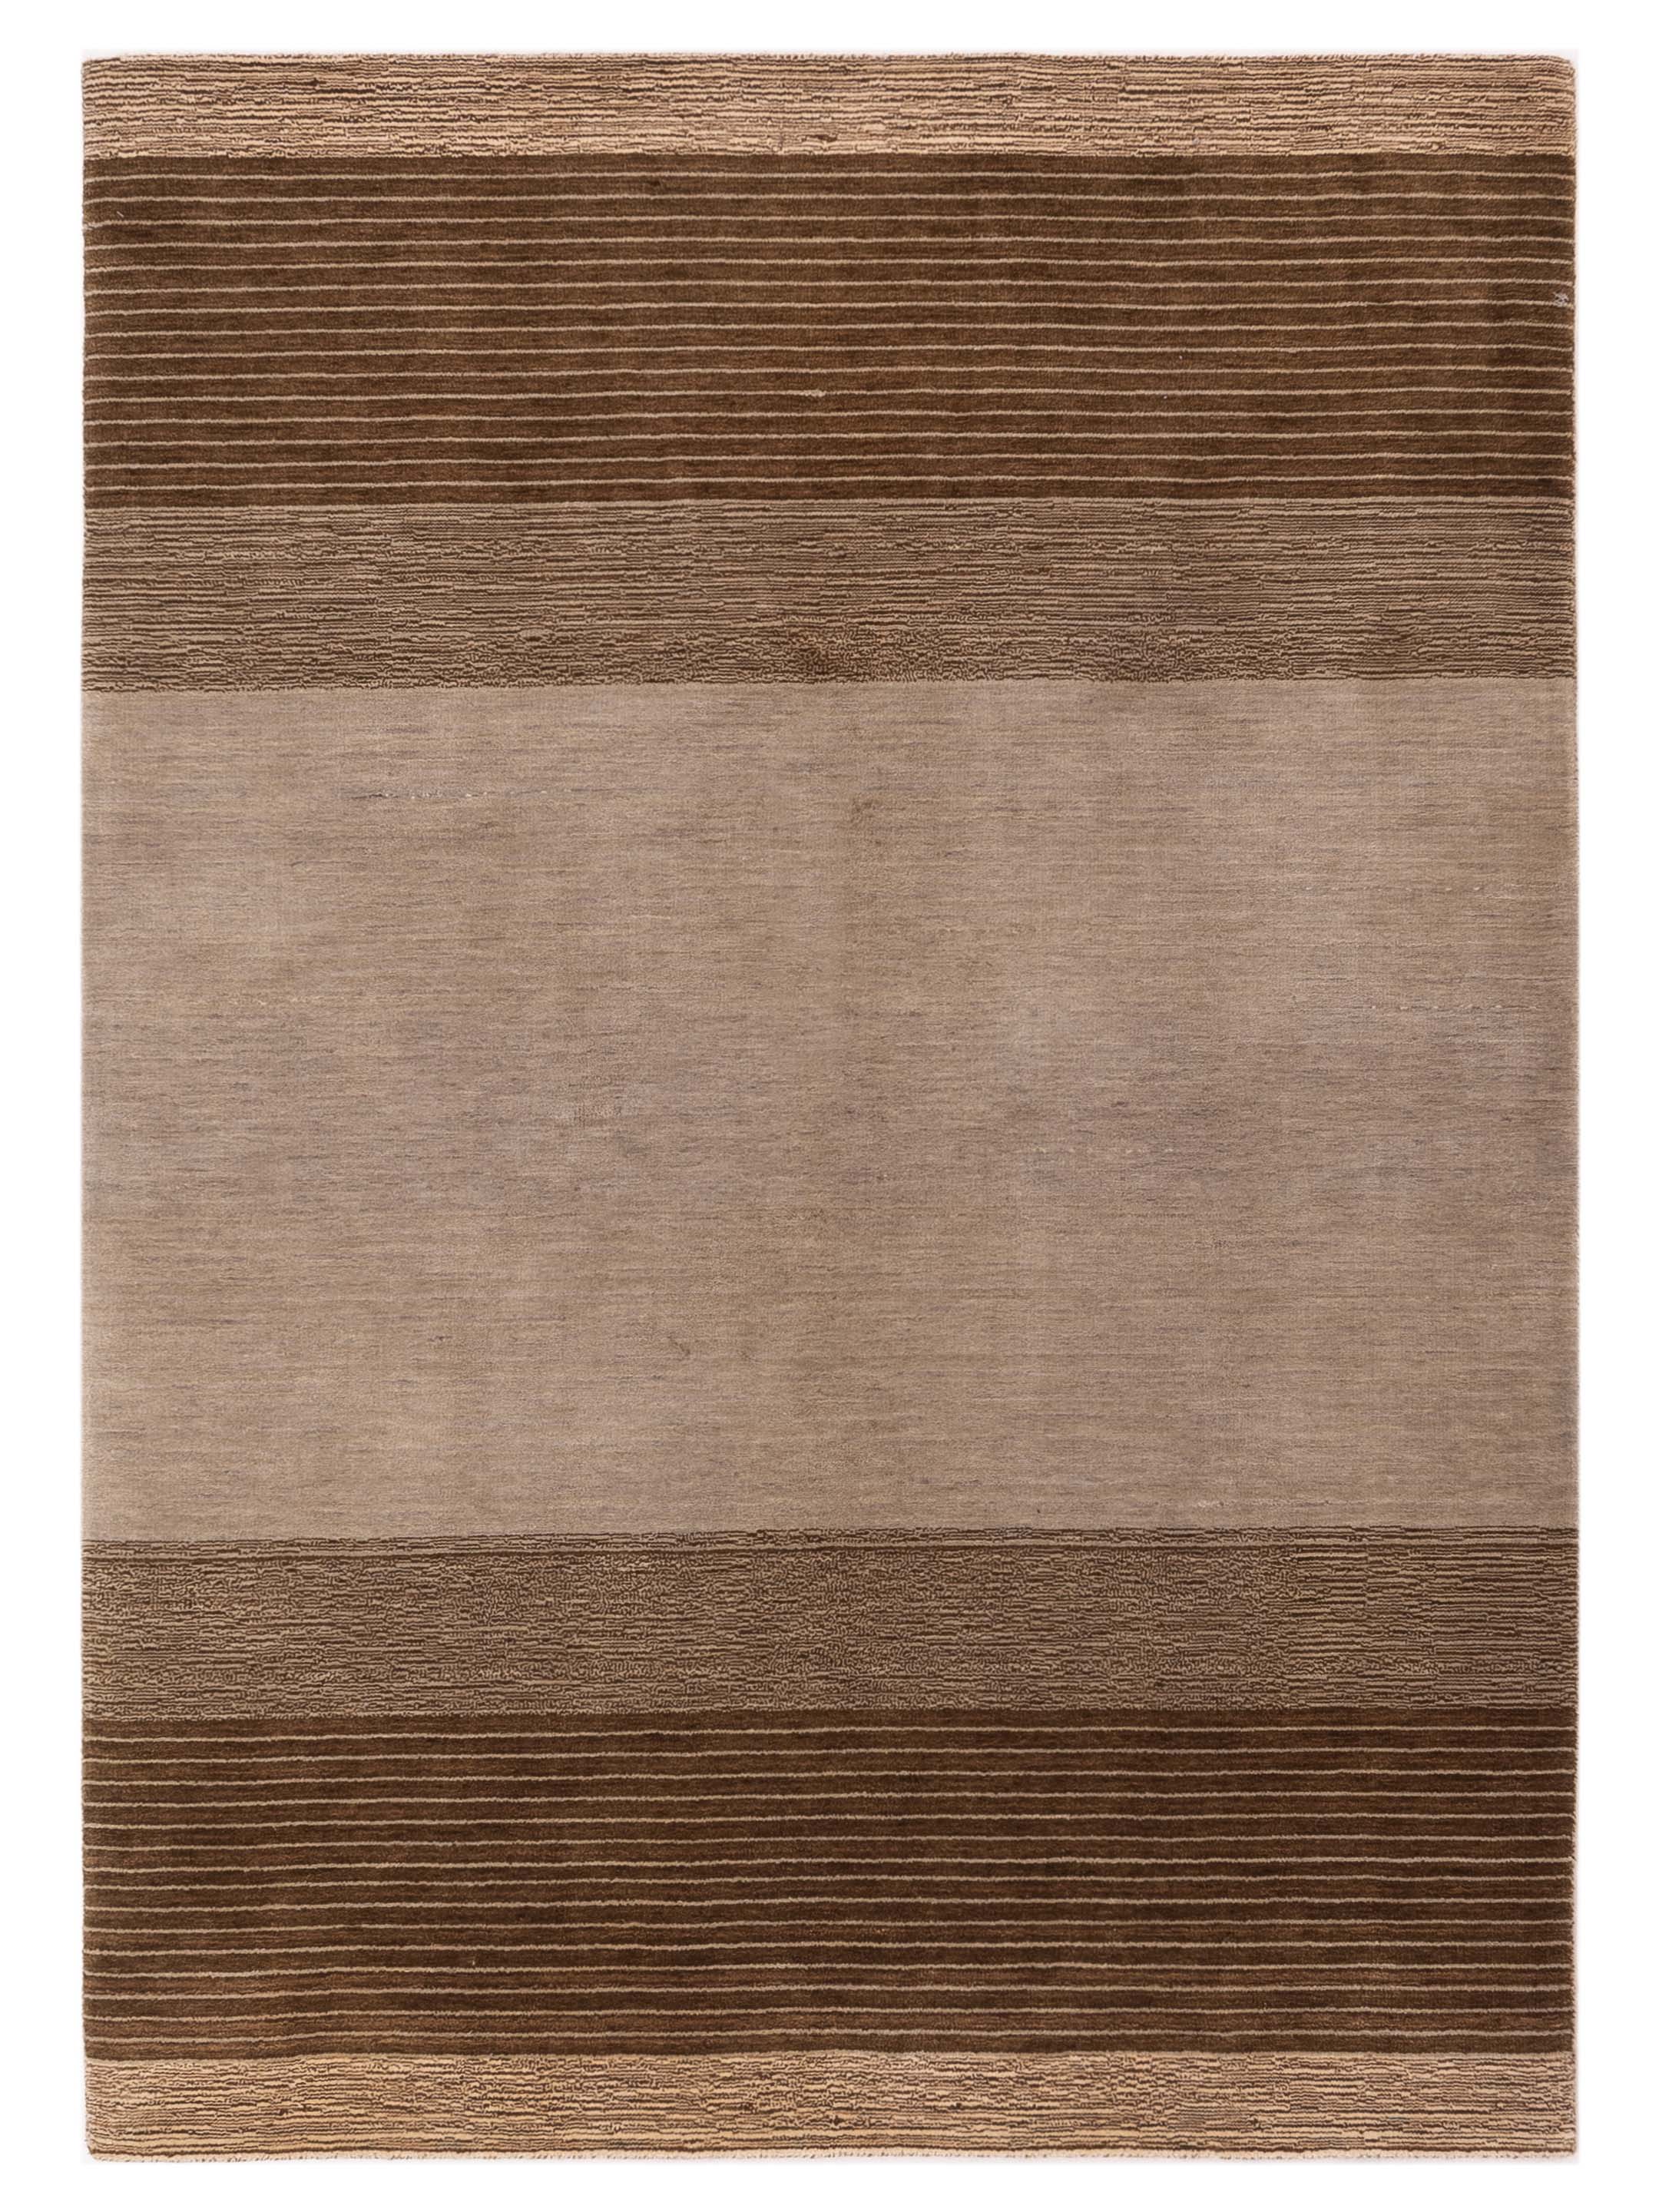 Brown himalayan contemporary area rug	